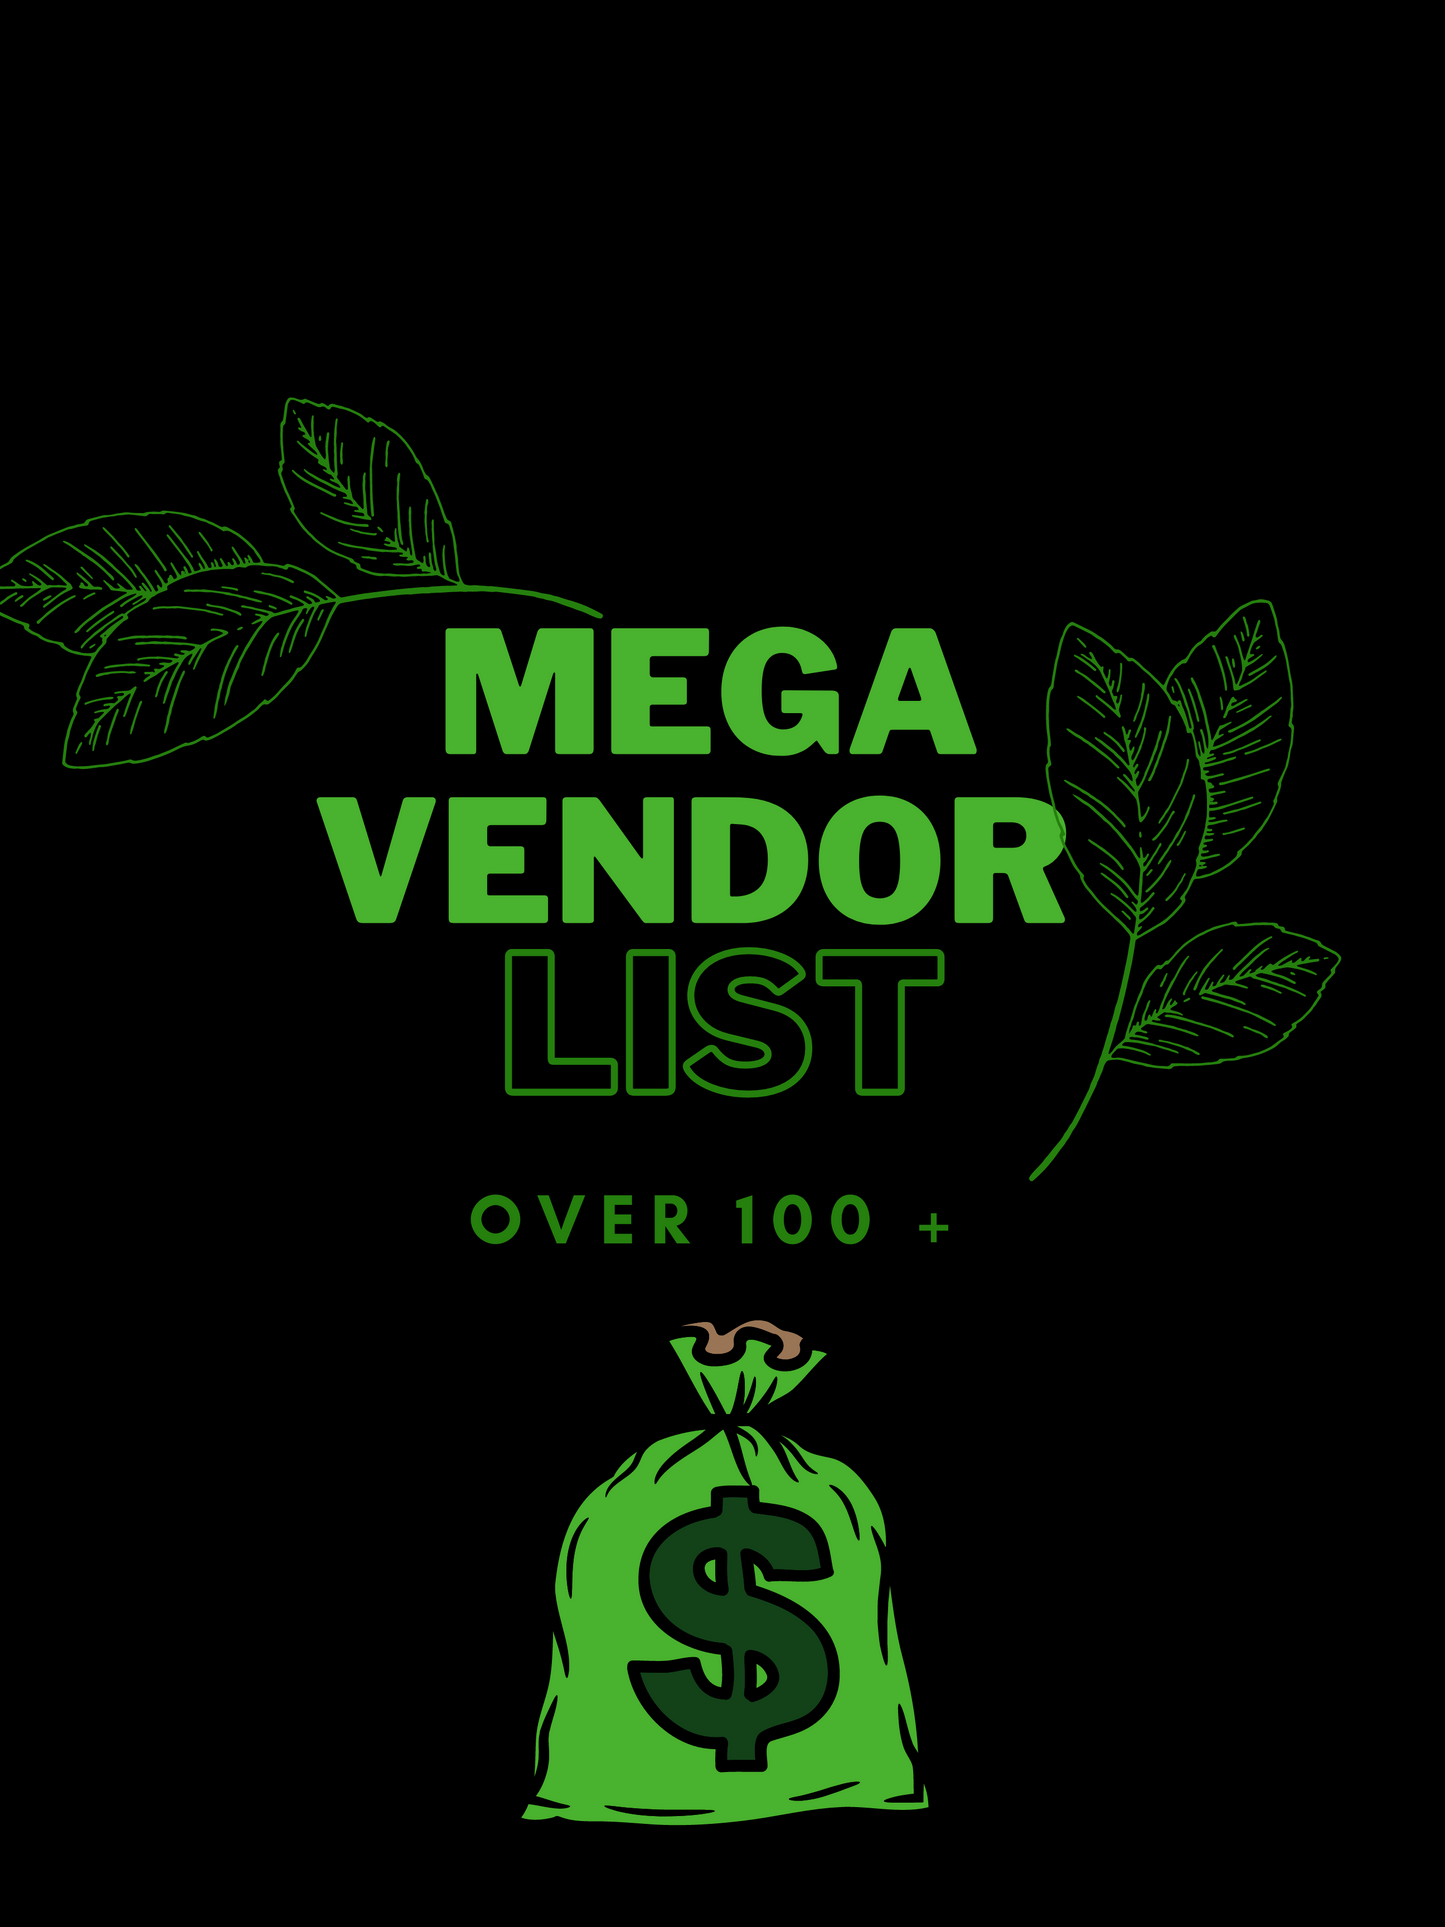 Mega Vendor List